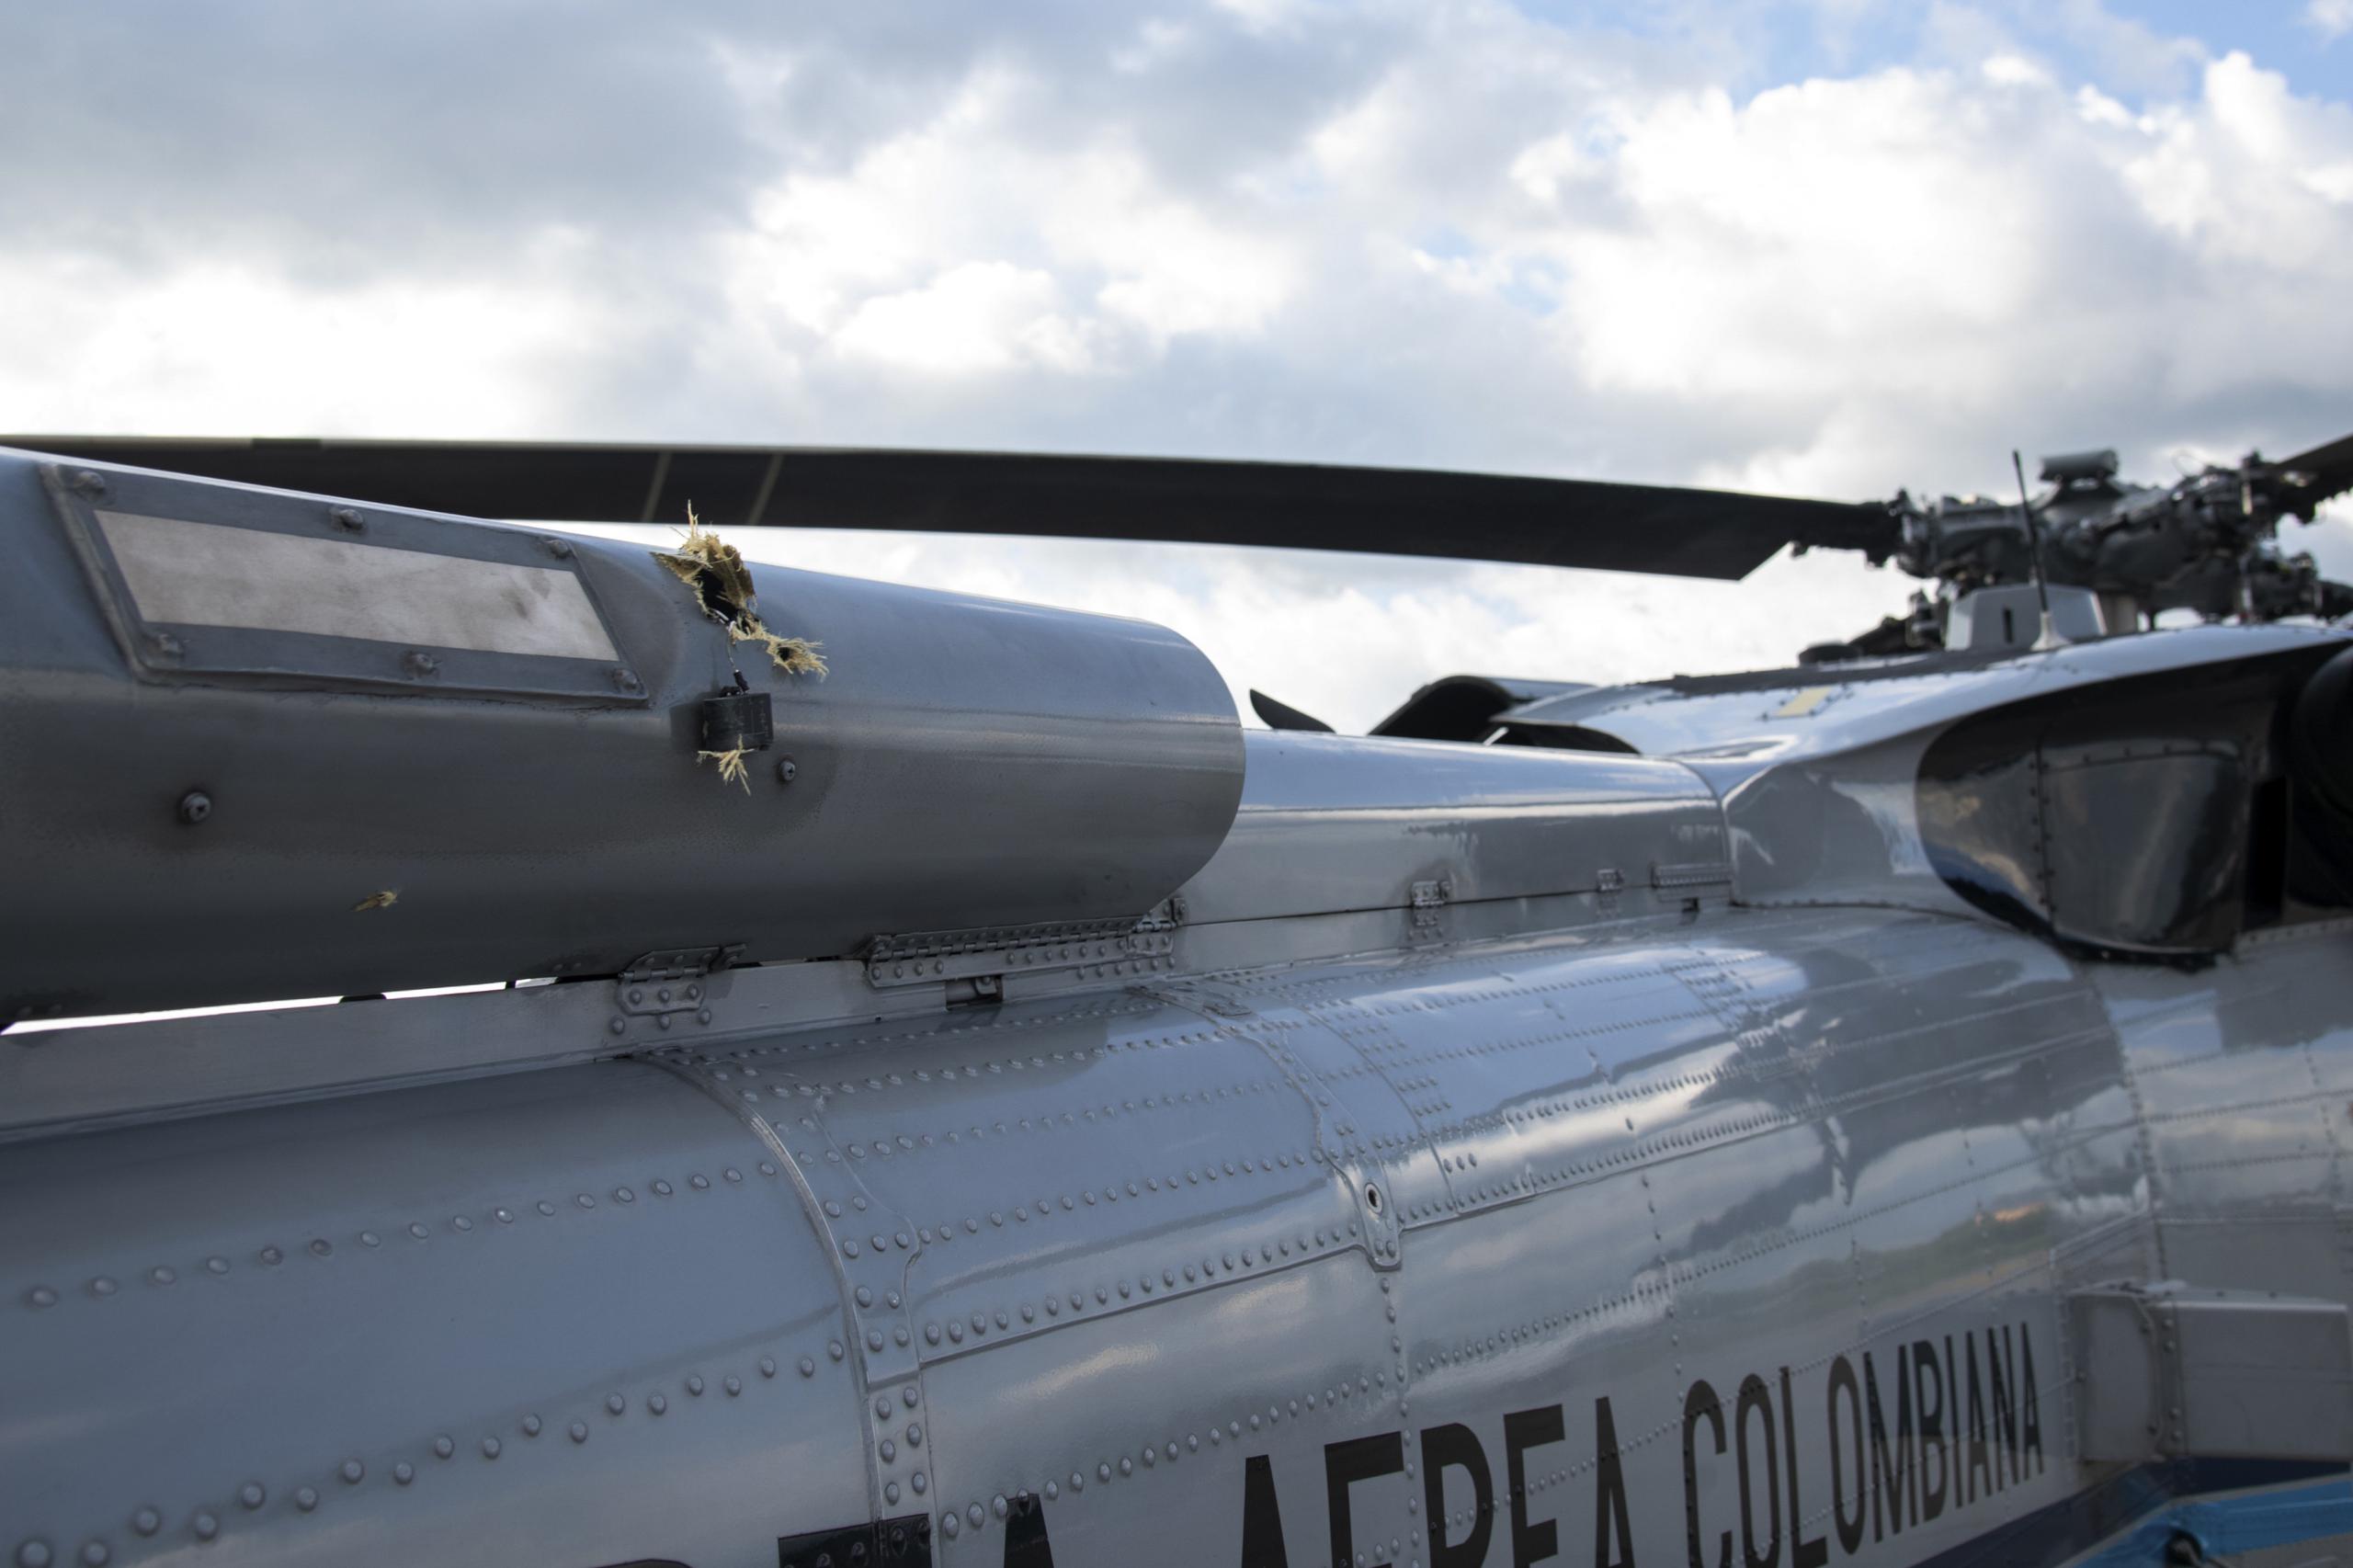 Agujeros de bala en el fuselaje de un helicóptero de la Fuerza Aérea Colombiana que fueron disparados mientras el presidente de Colombia, Iván Duque, y miembros de su gabinete viajaban en el helicóptero, en el aeropuerto de Cúcuta, Colombia.